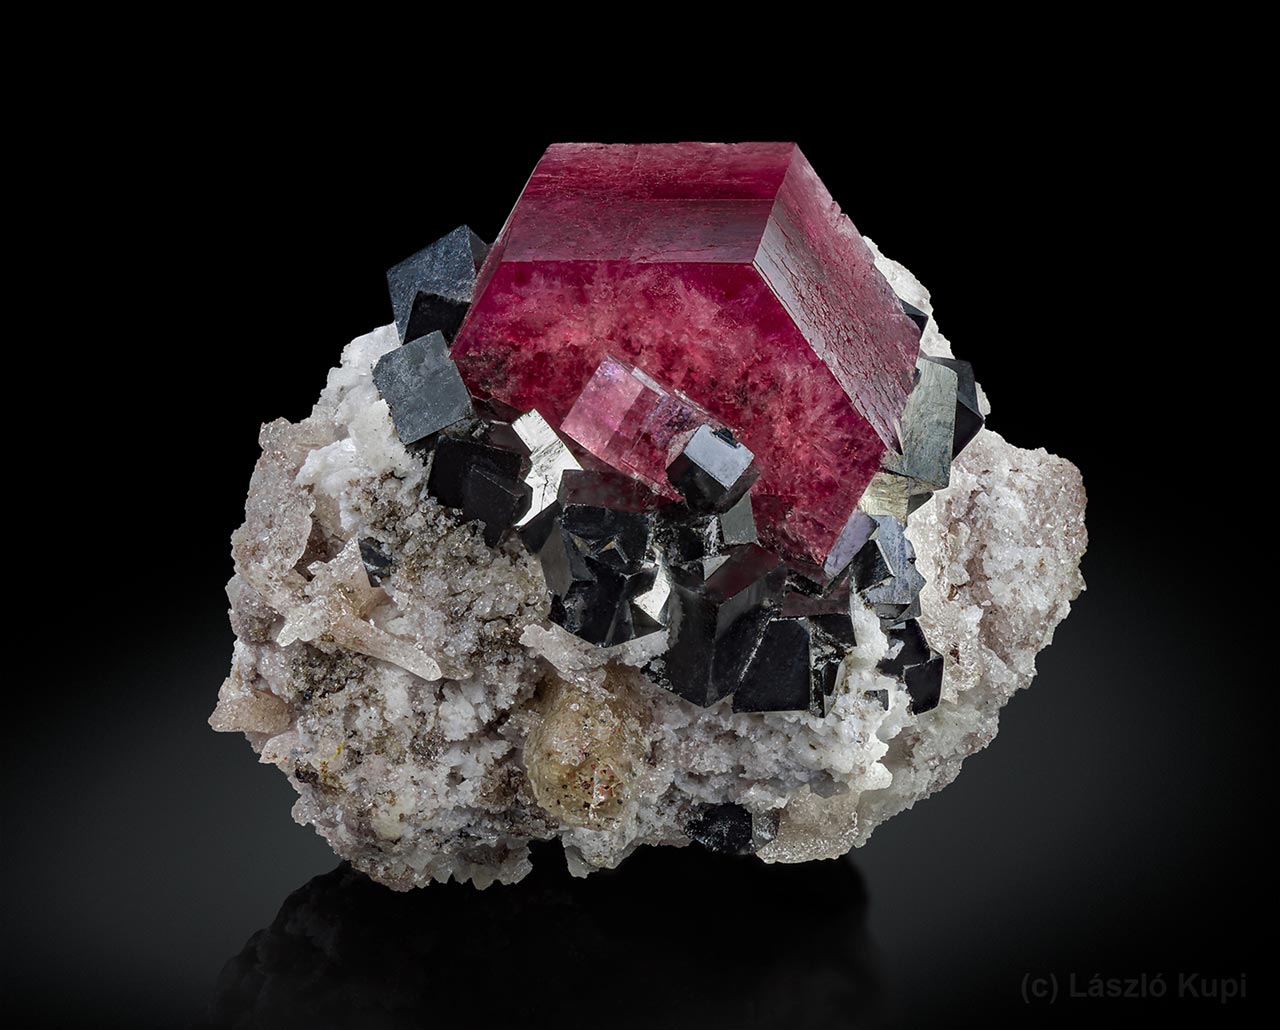 Červený beryl (bixbit) s černými krystaly bixbyitu a světlým topazem z lokality Searl Canyon, Red Beryl Claim, Juab Co., Utah, USA